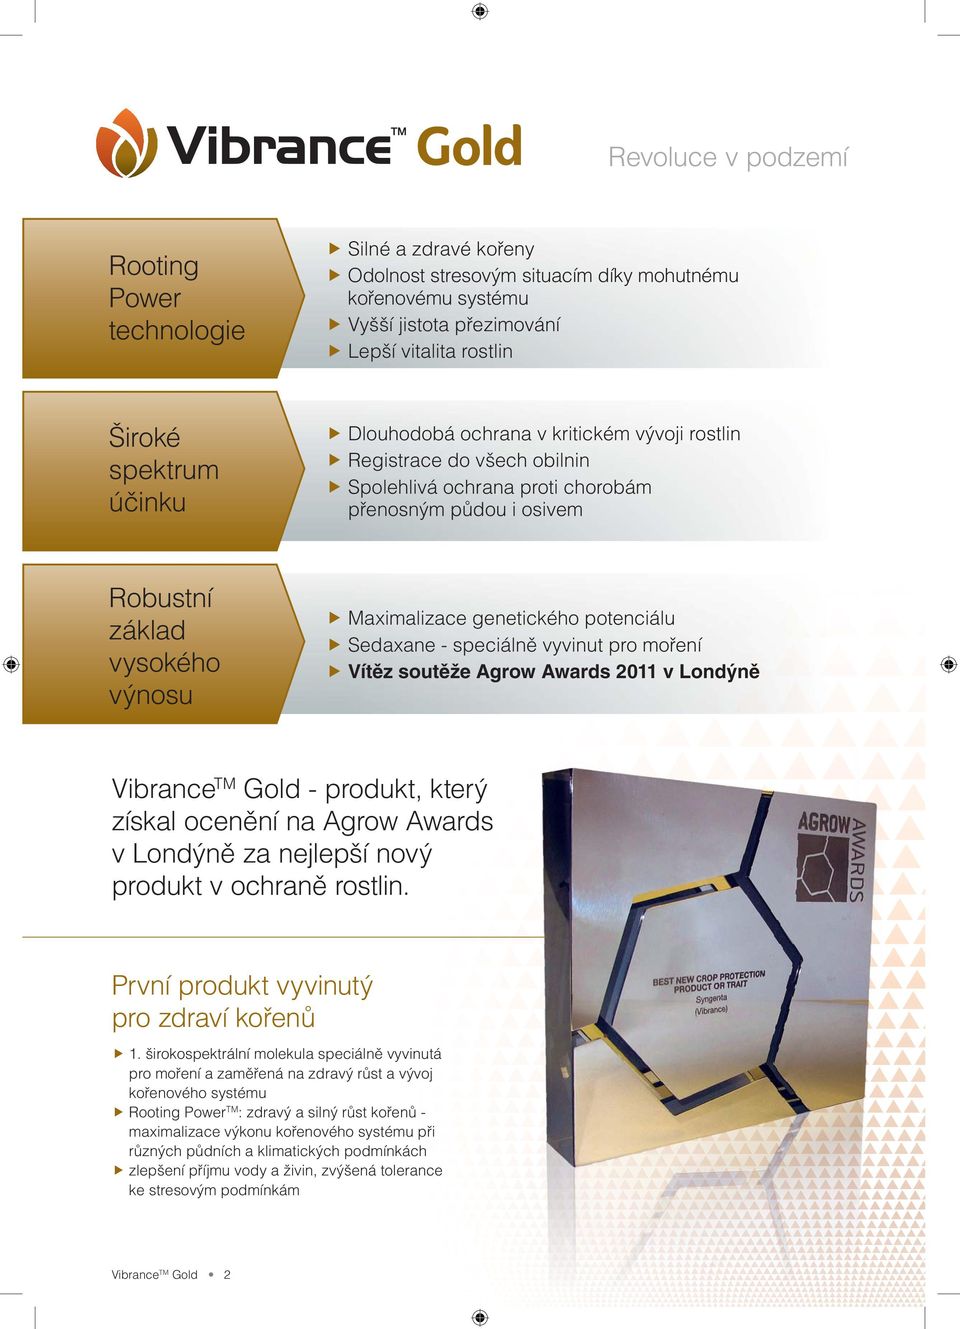 potenciálu Sedaxane - speciálně vyvinut pro moření Vítěz soutěže Agrow Awards 2011 v Londýně Vibrance TM Gold - produkt, který získal ocenění na Agrow Awards v Londýně za nejlepší nový produkt v